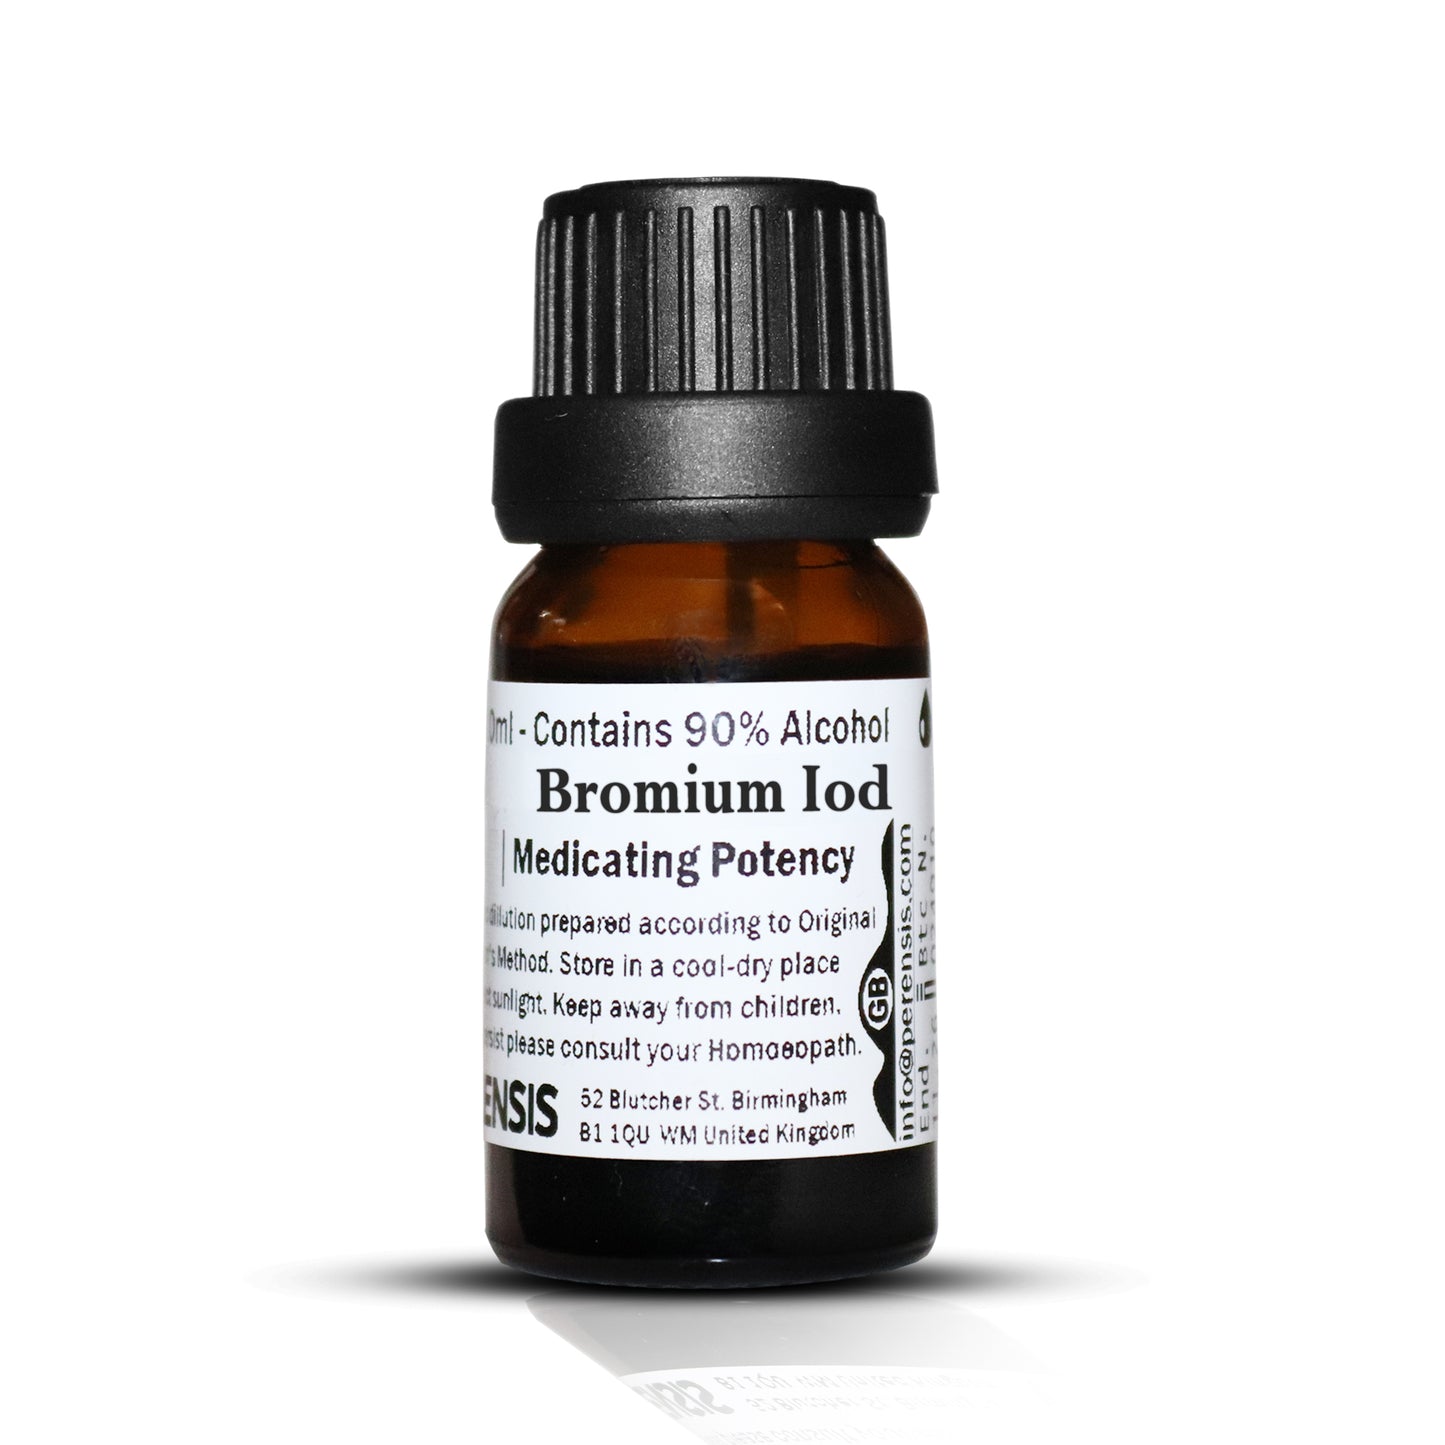 Bromium Iod